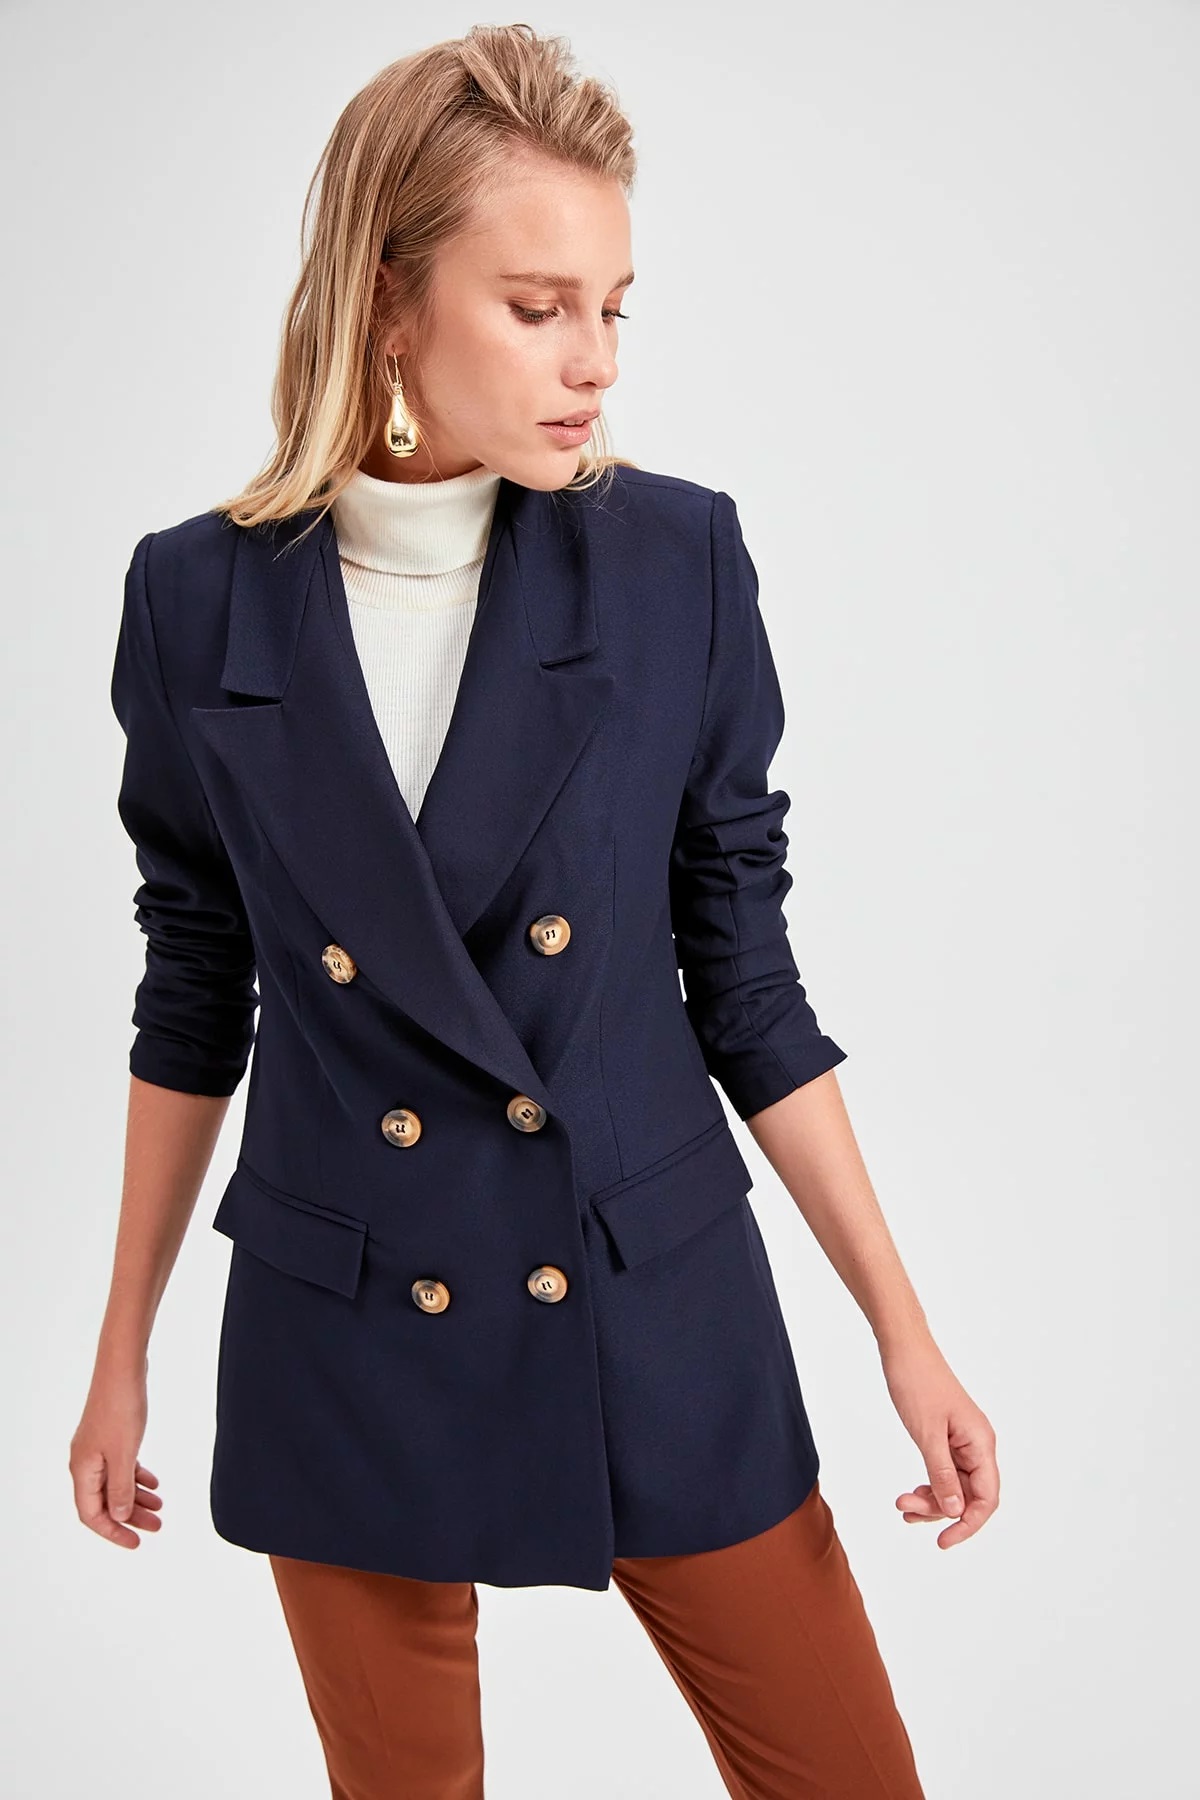 Women's Navy Blue Blazer Jacket - Beren Store